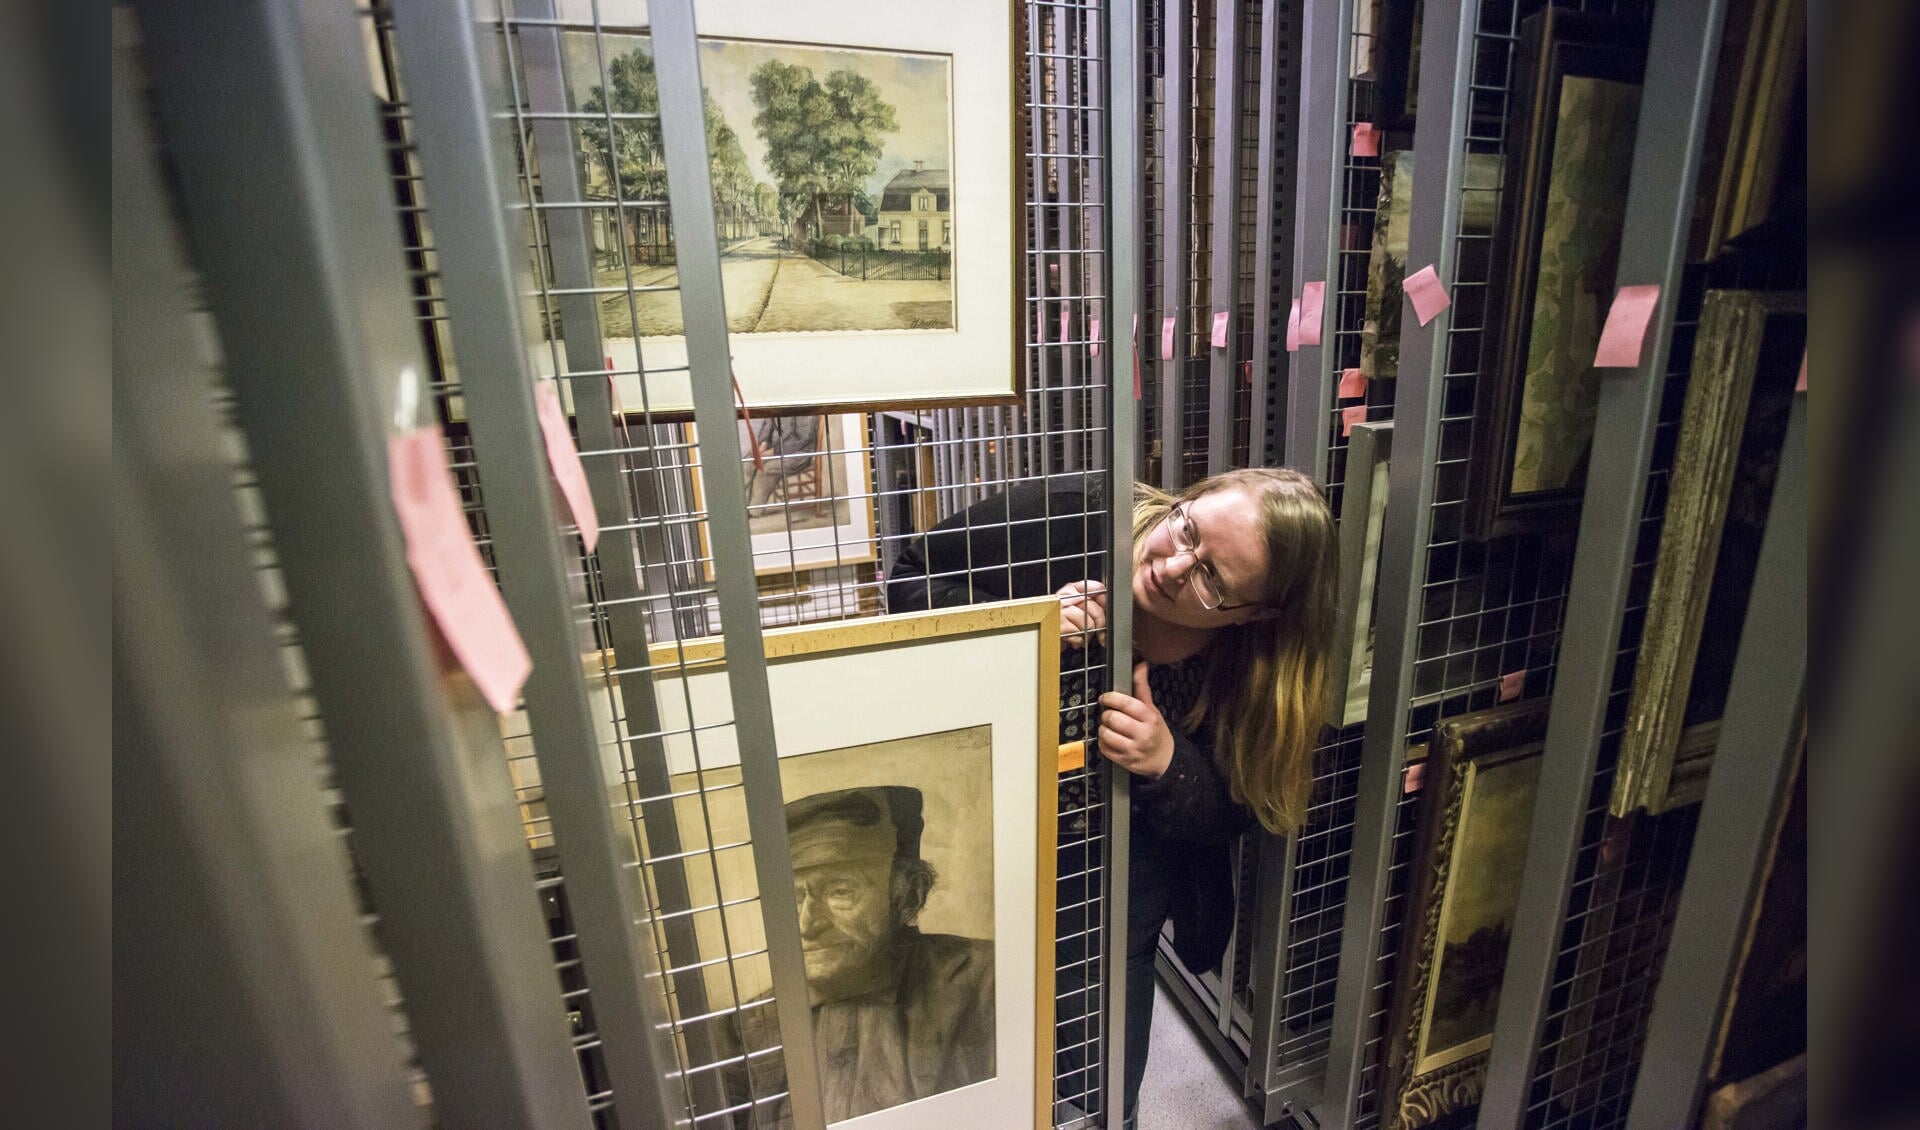 De archieven, zoals hier in Hilversum, bevatten een schat aan informatie, waaronder schilderijen en tekeningen.